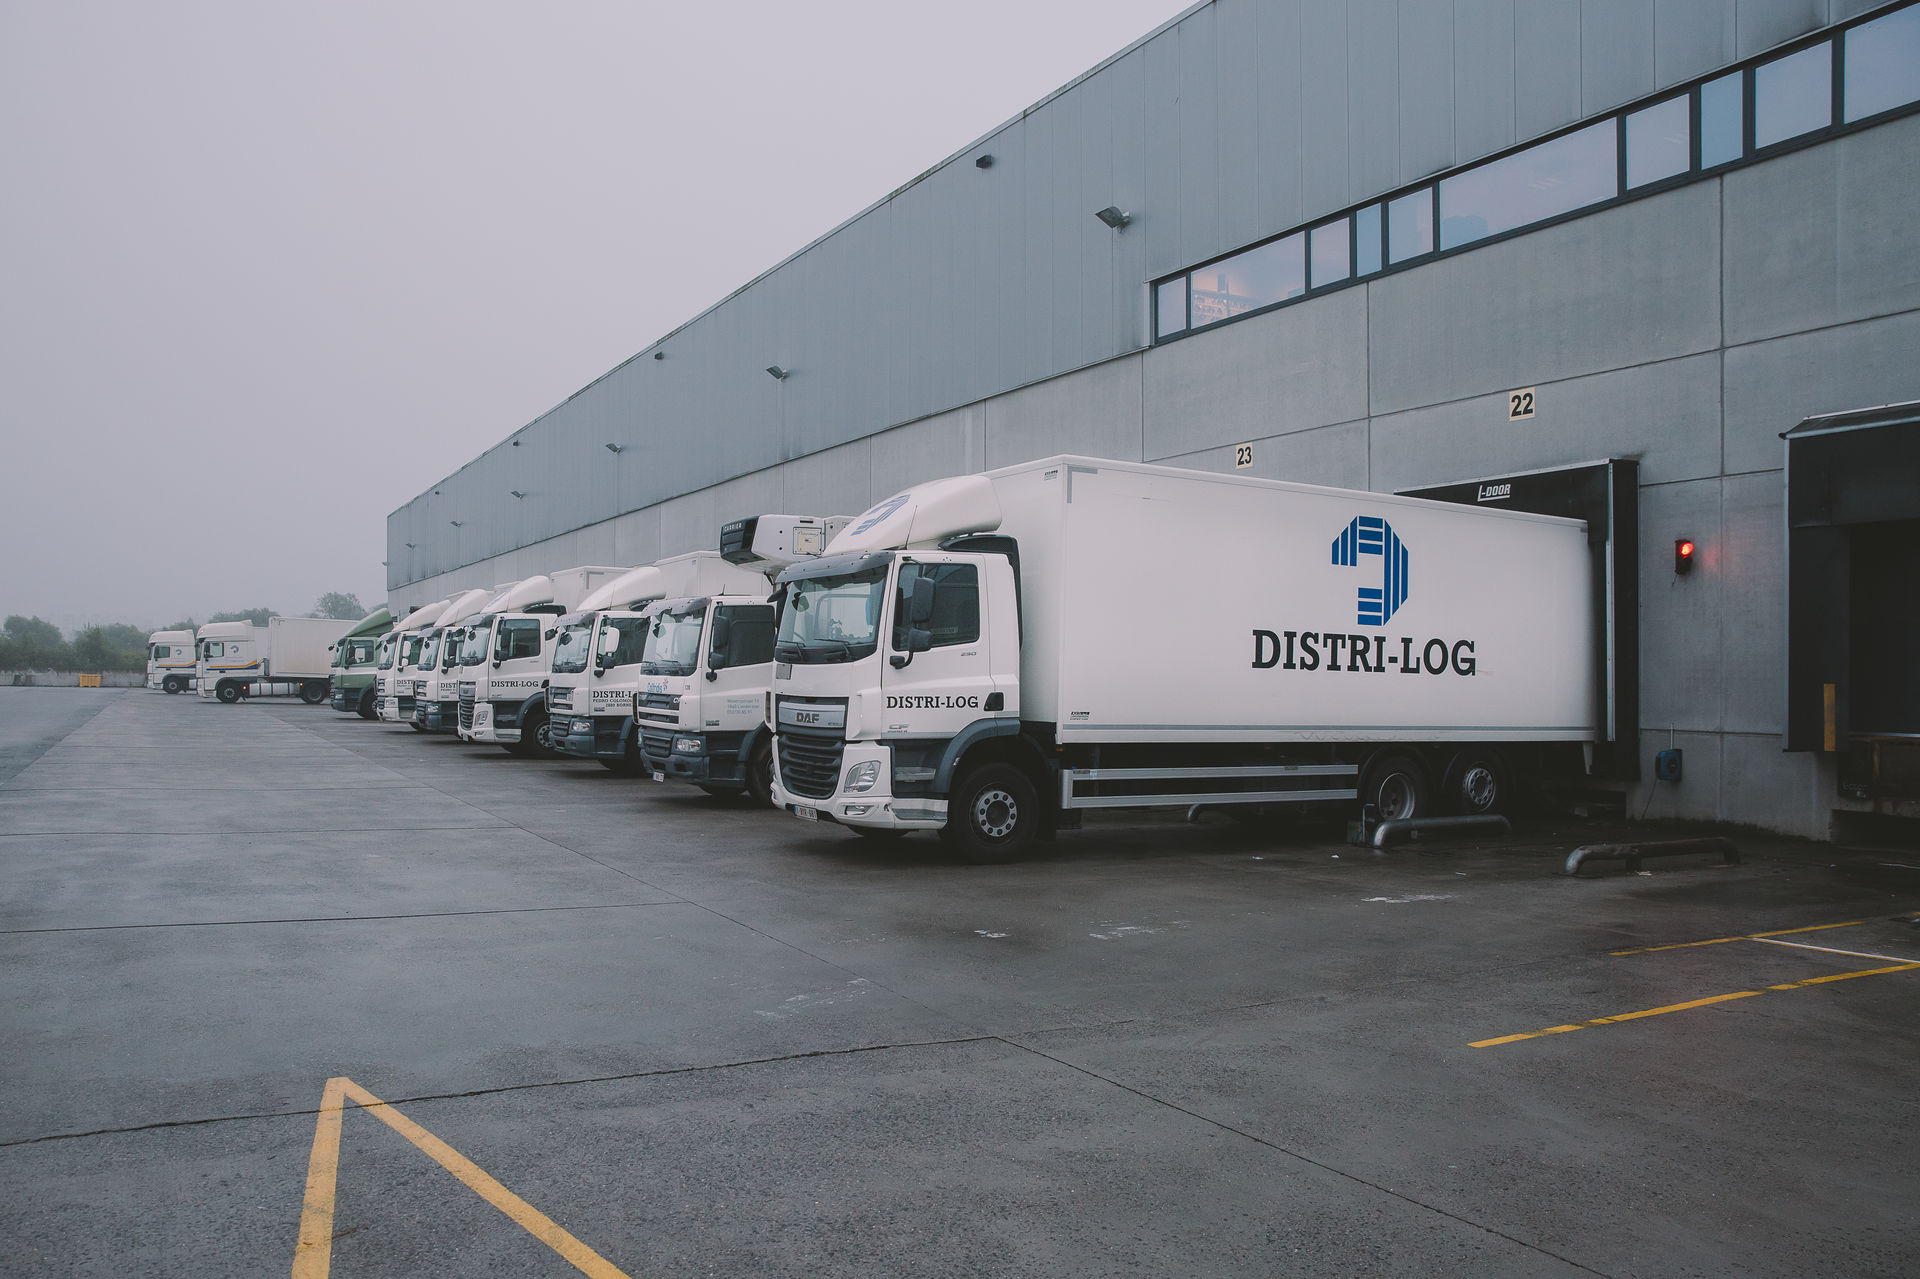 Distrilog Group Transport